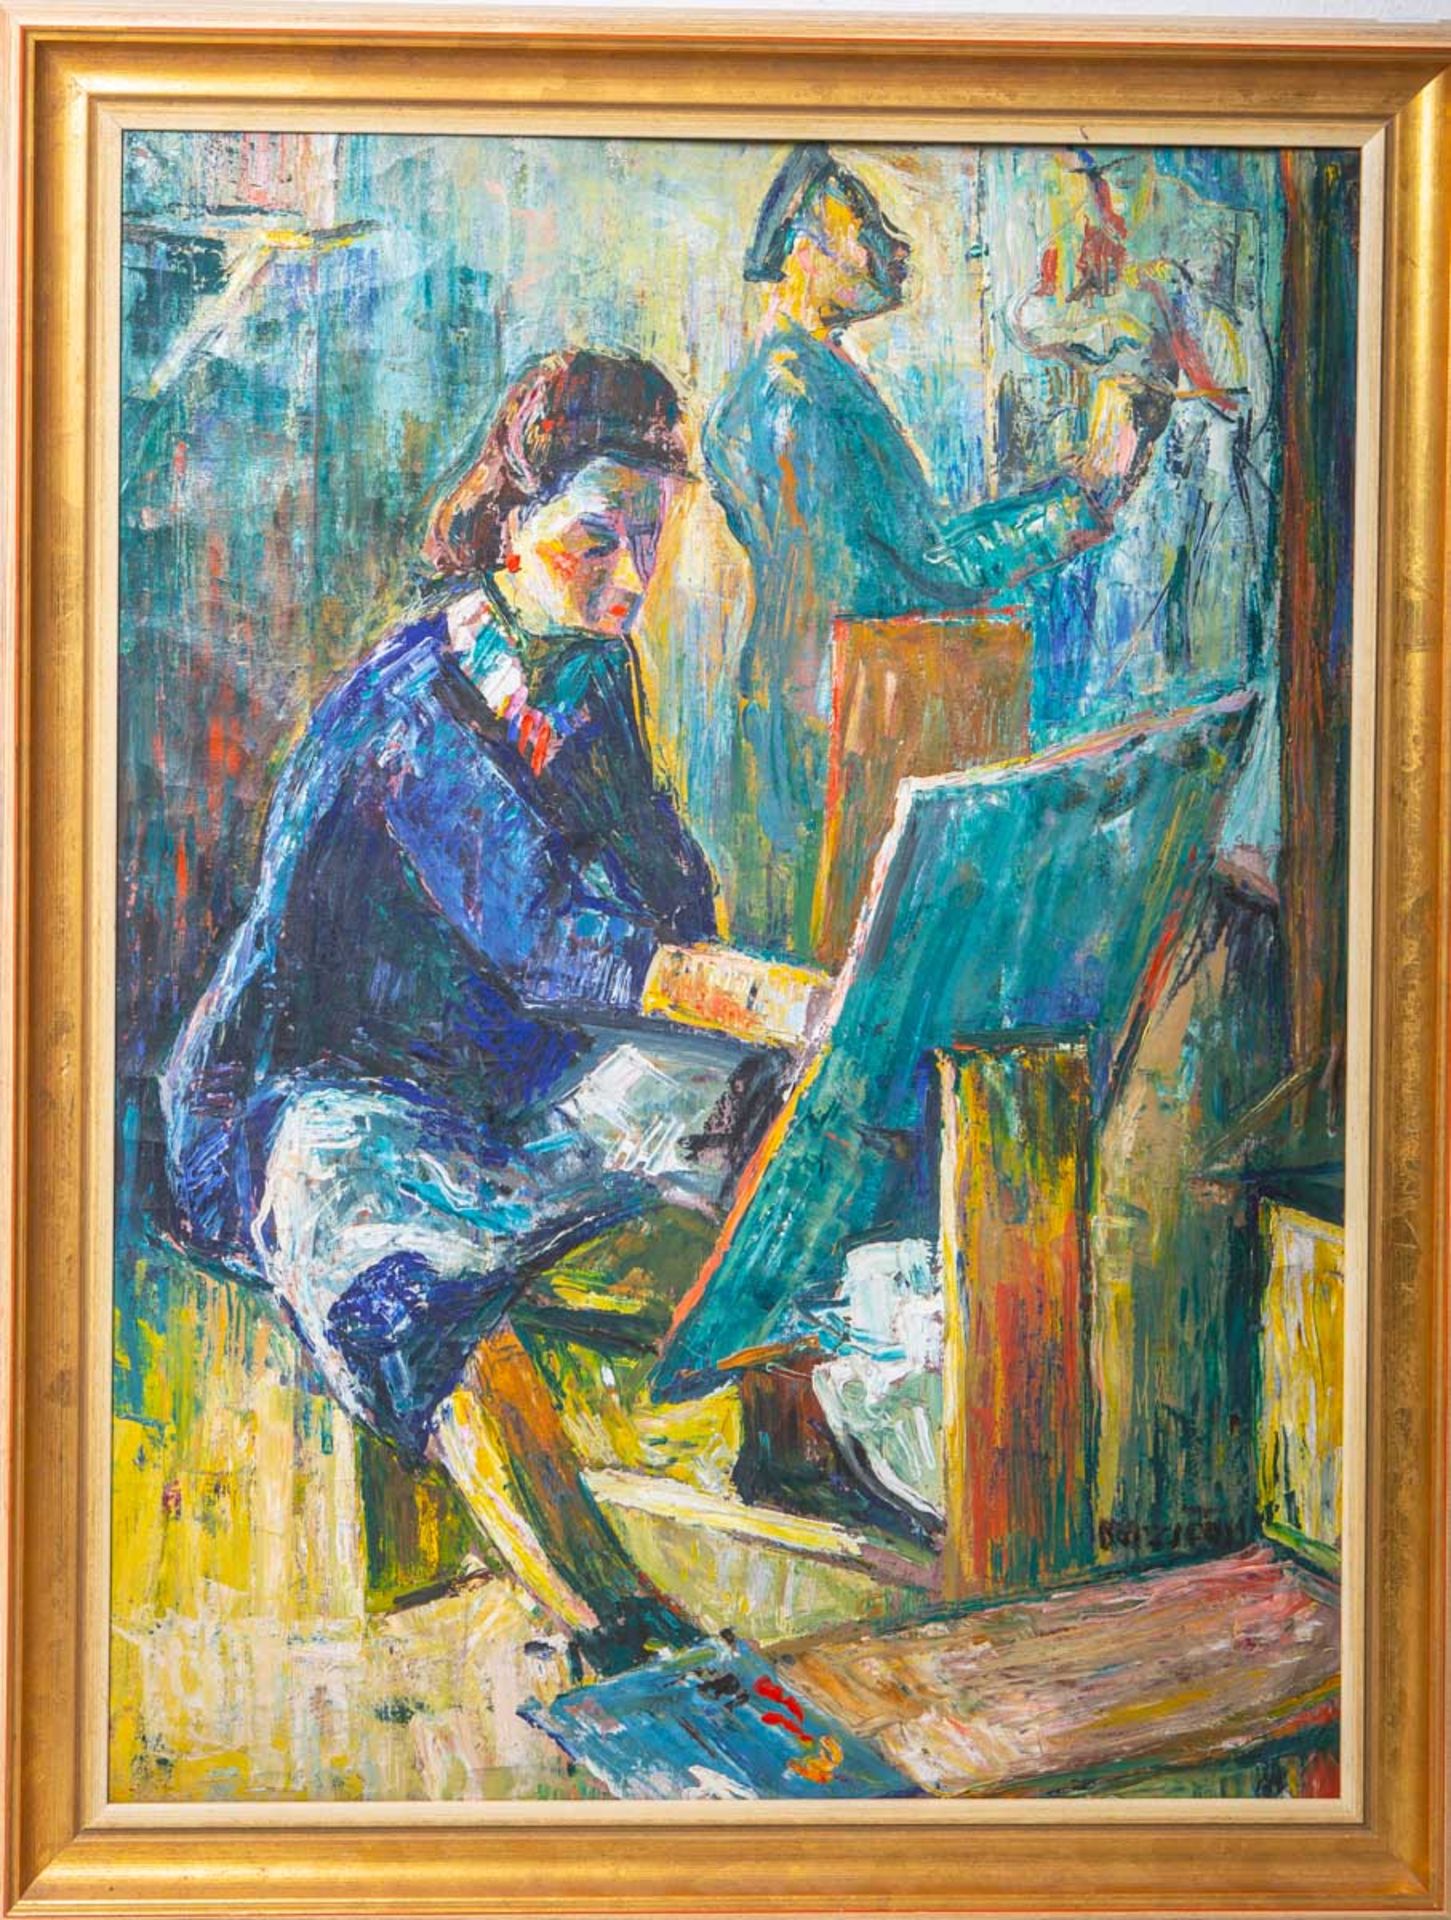 KünstlerIn unbekannt (Ungarn, 20. Jh.), Maler m. einer Malerin im Atelier